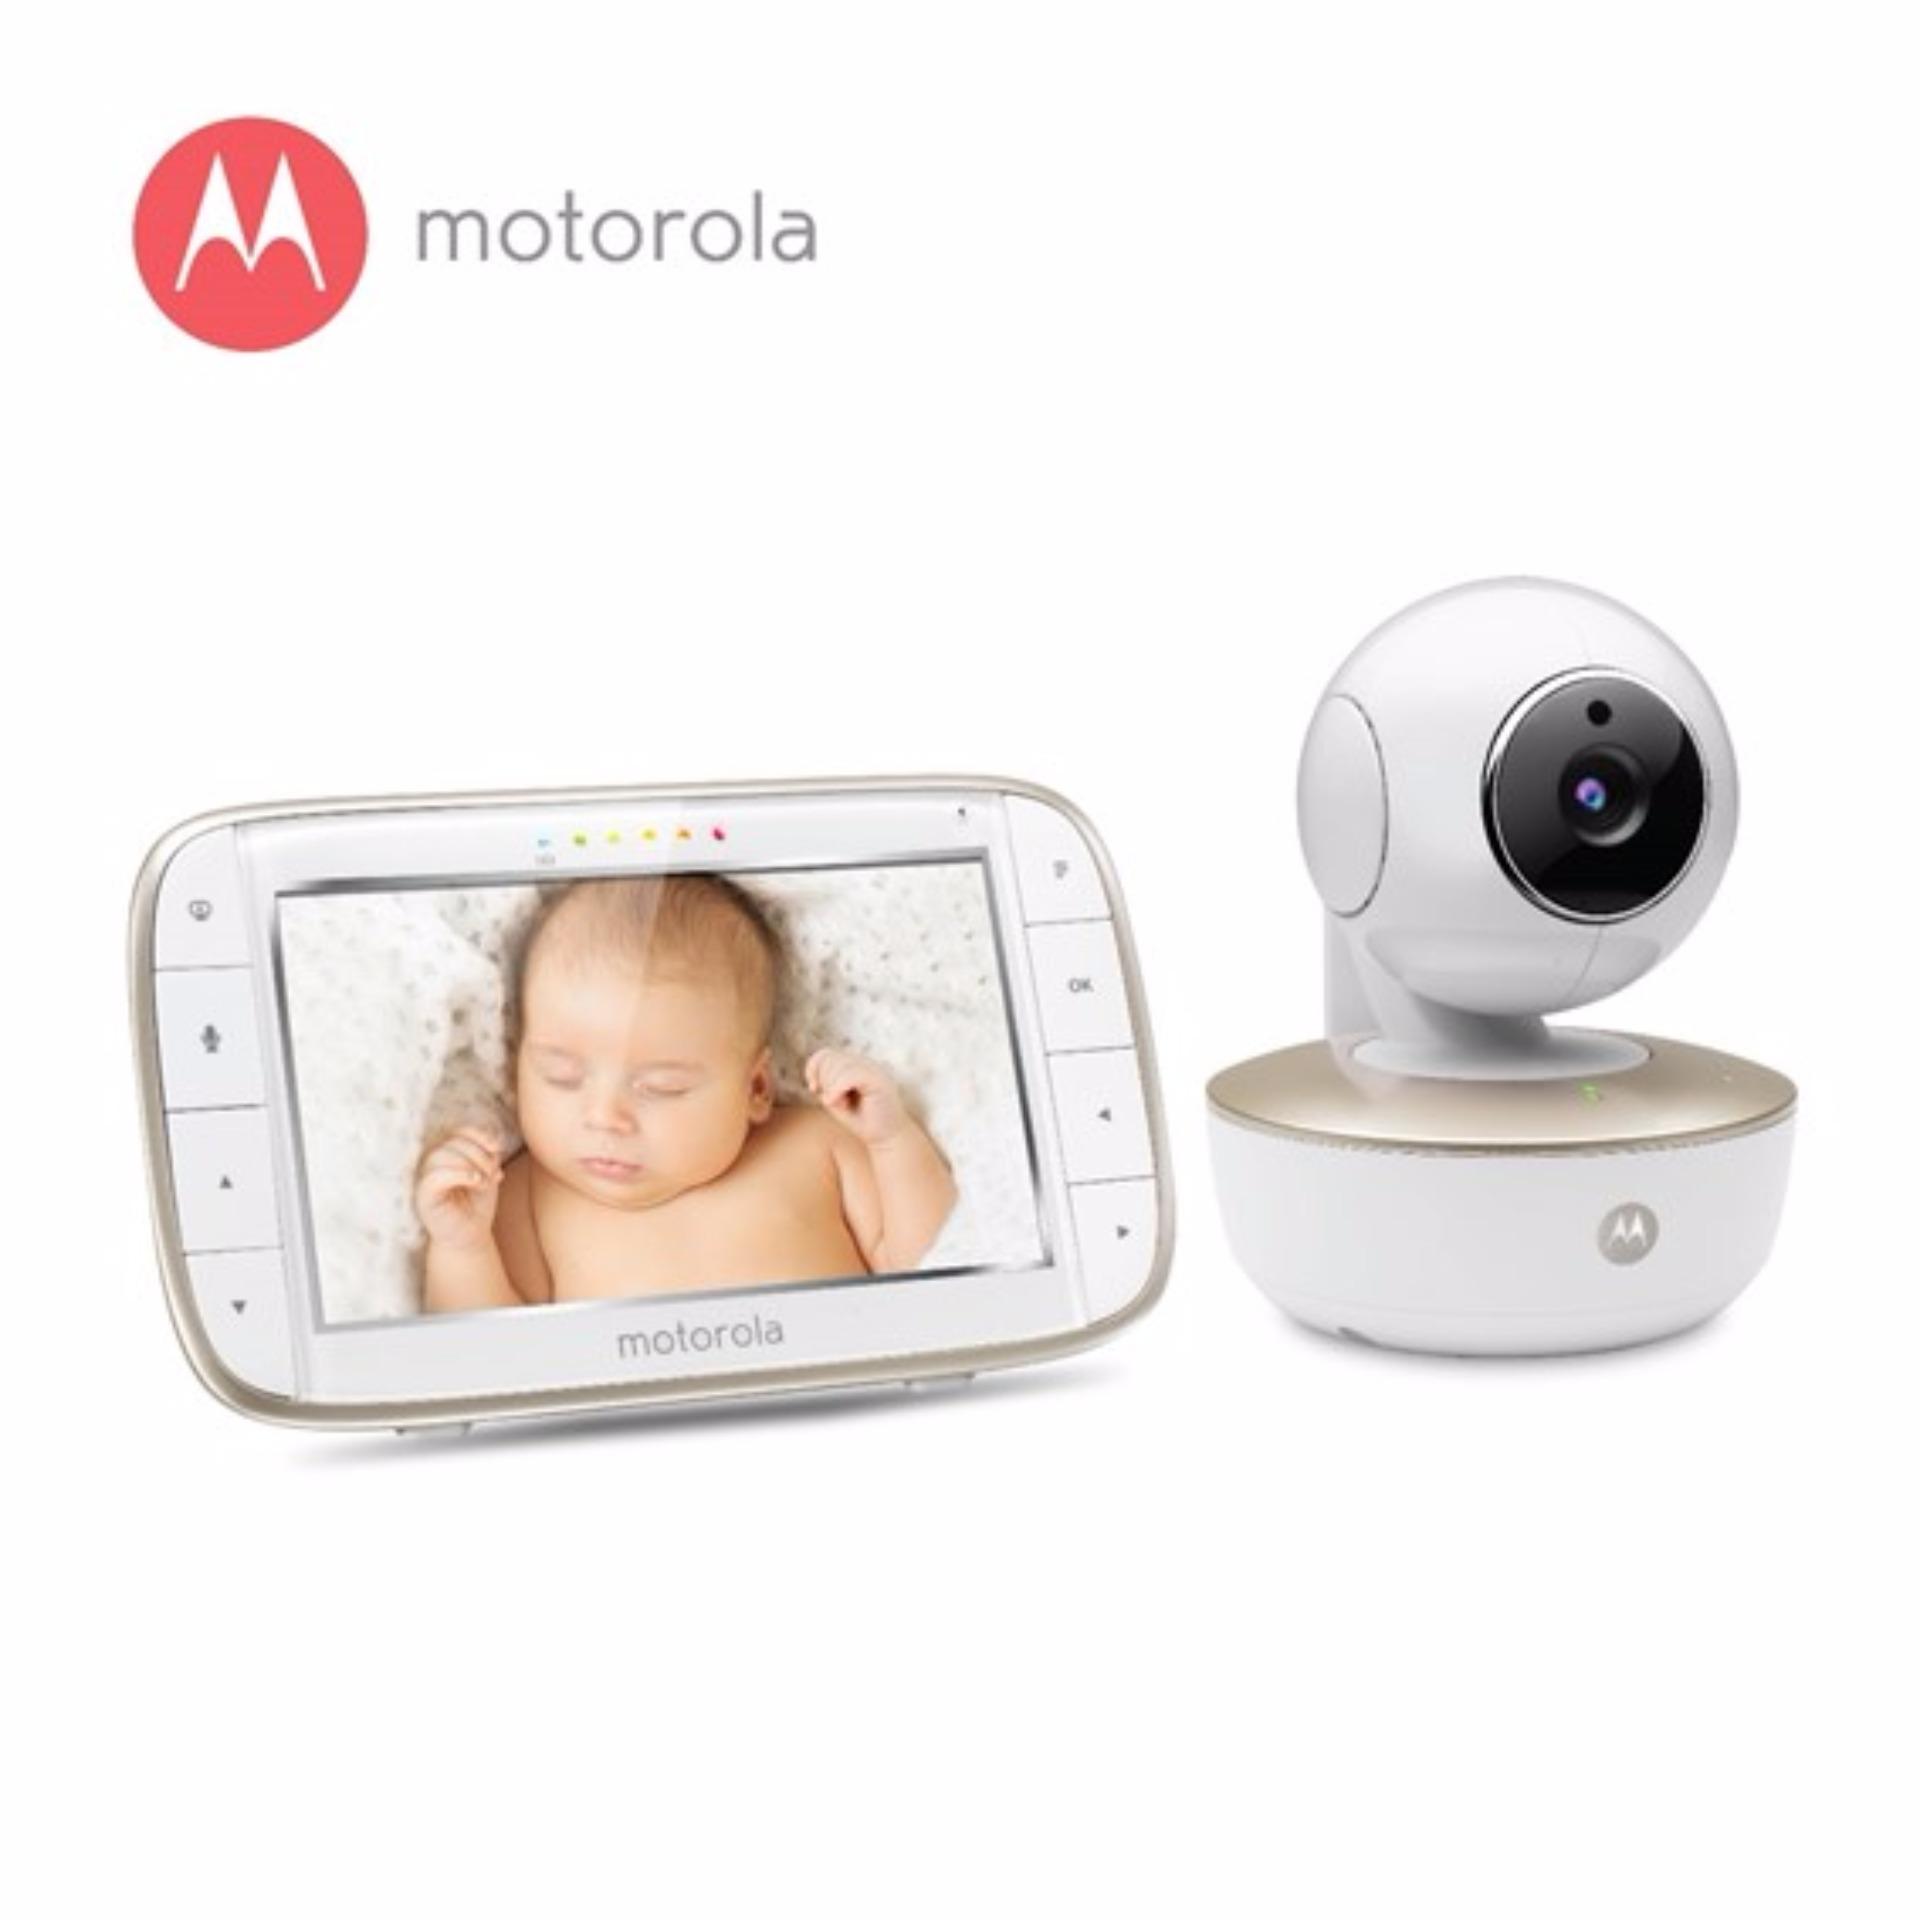 ซื้อที่ไหน Motorola เบบี้มอนิเตอร์ MBP855 Hd Video Baby Monitor 5" W/Wifi